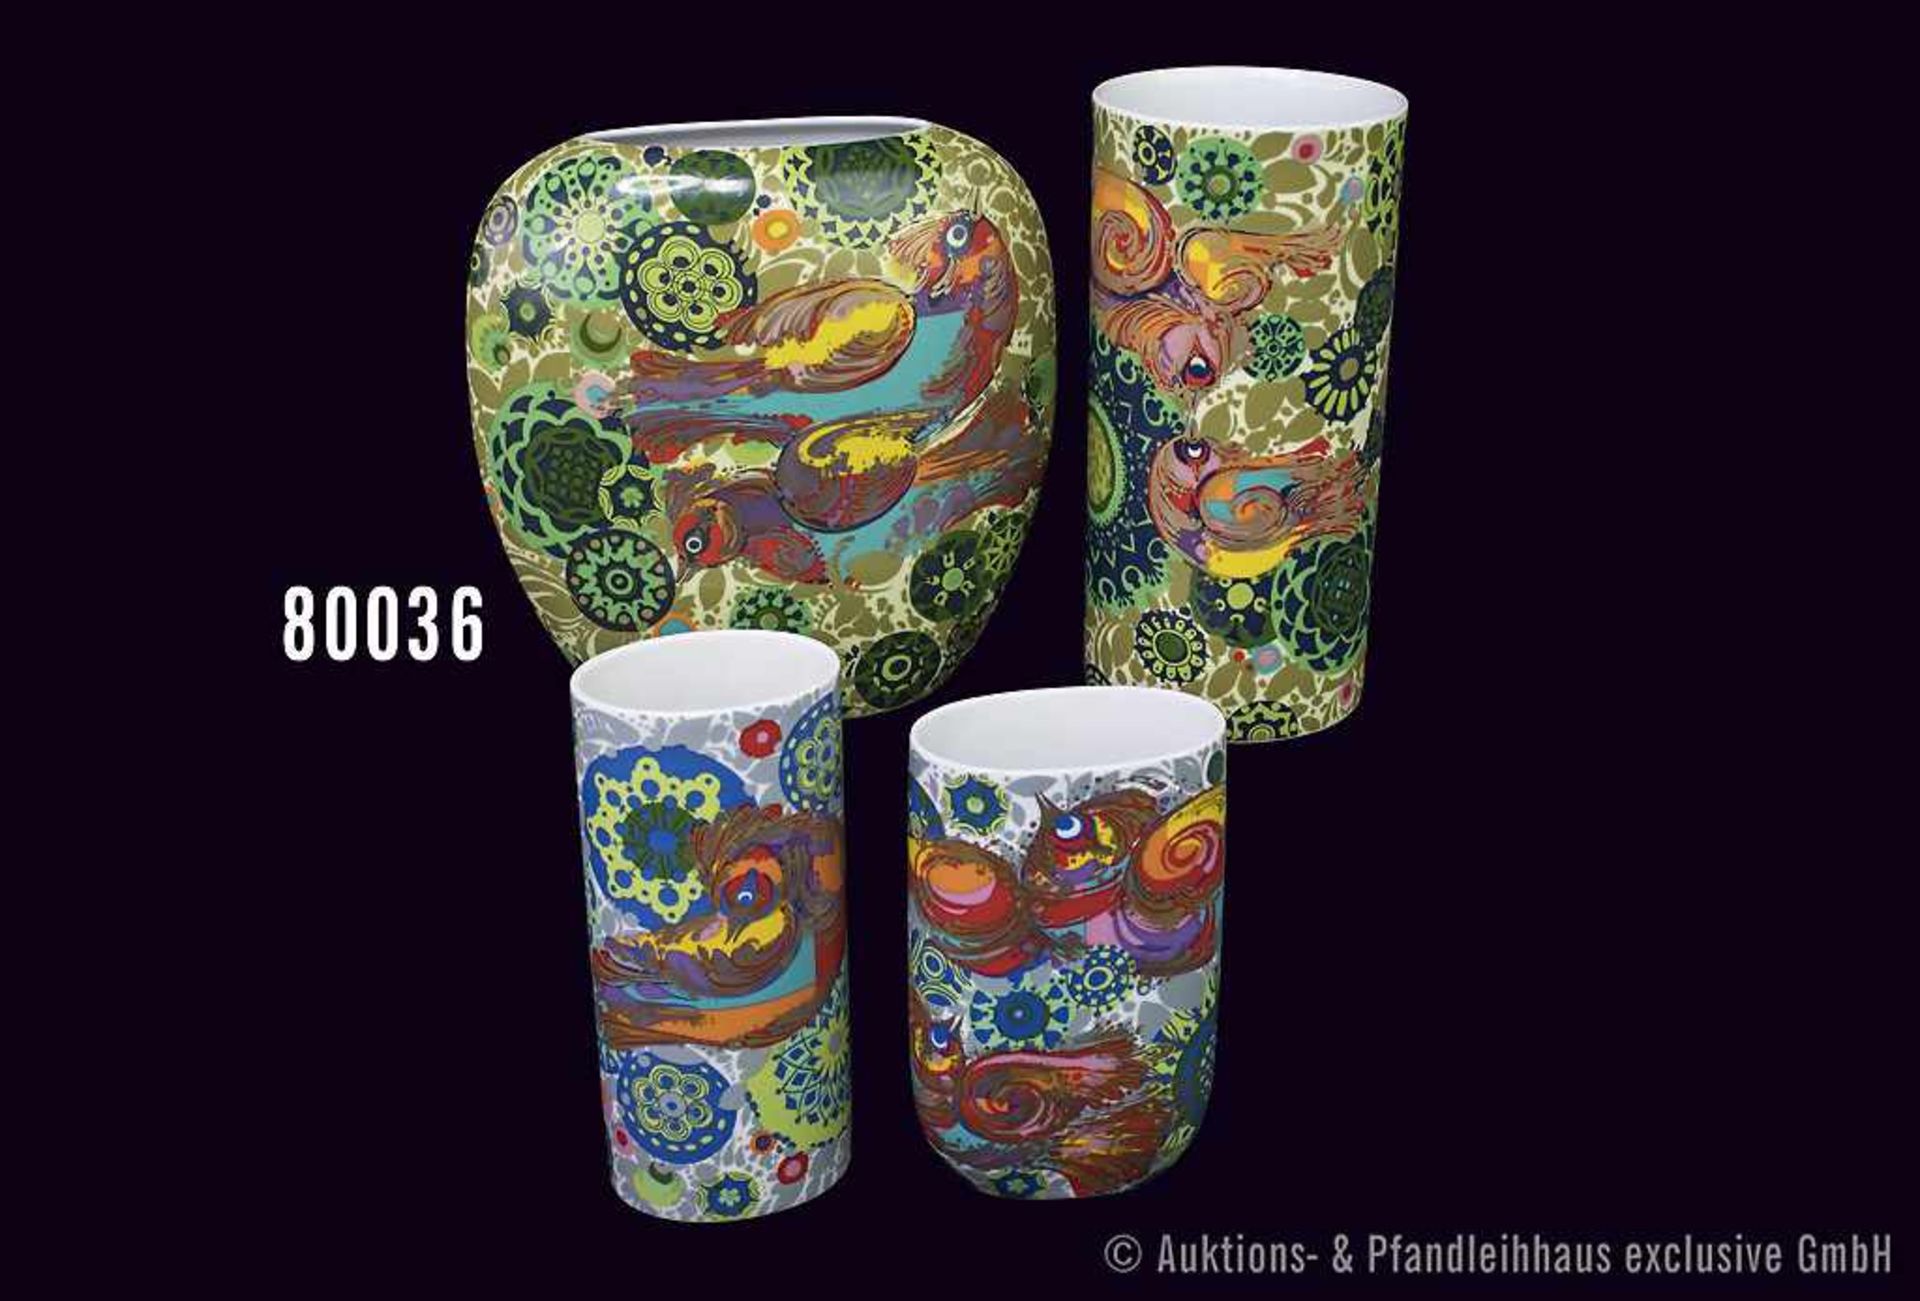 Konv. 4 Rosenthal Porzellan Vasen, Künstler Björn Wiinblad, Dekor Feuervogel, H bis 22,5 cm, sehr